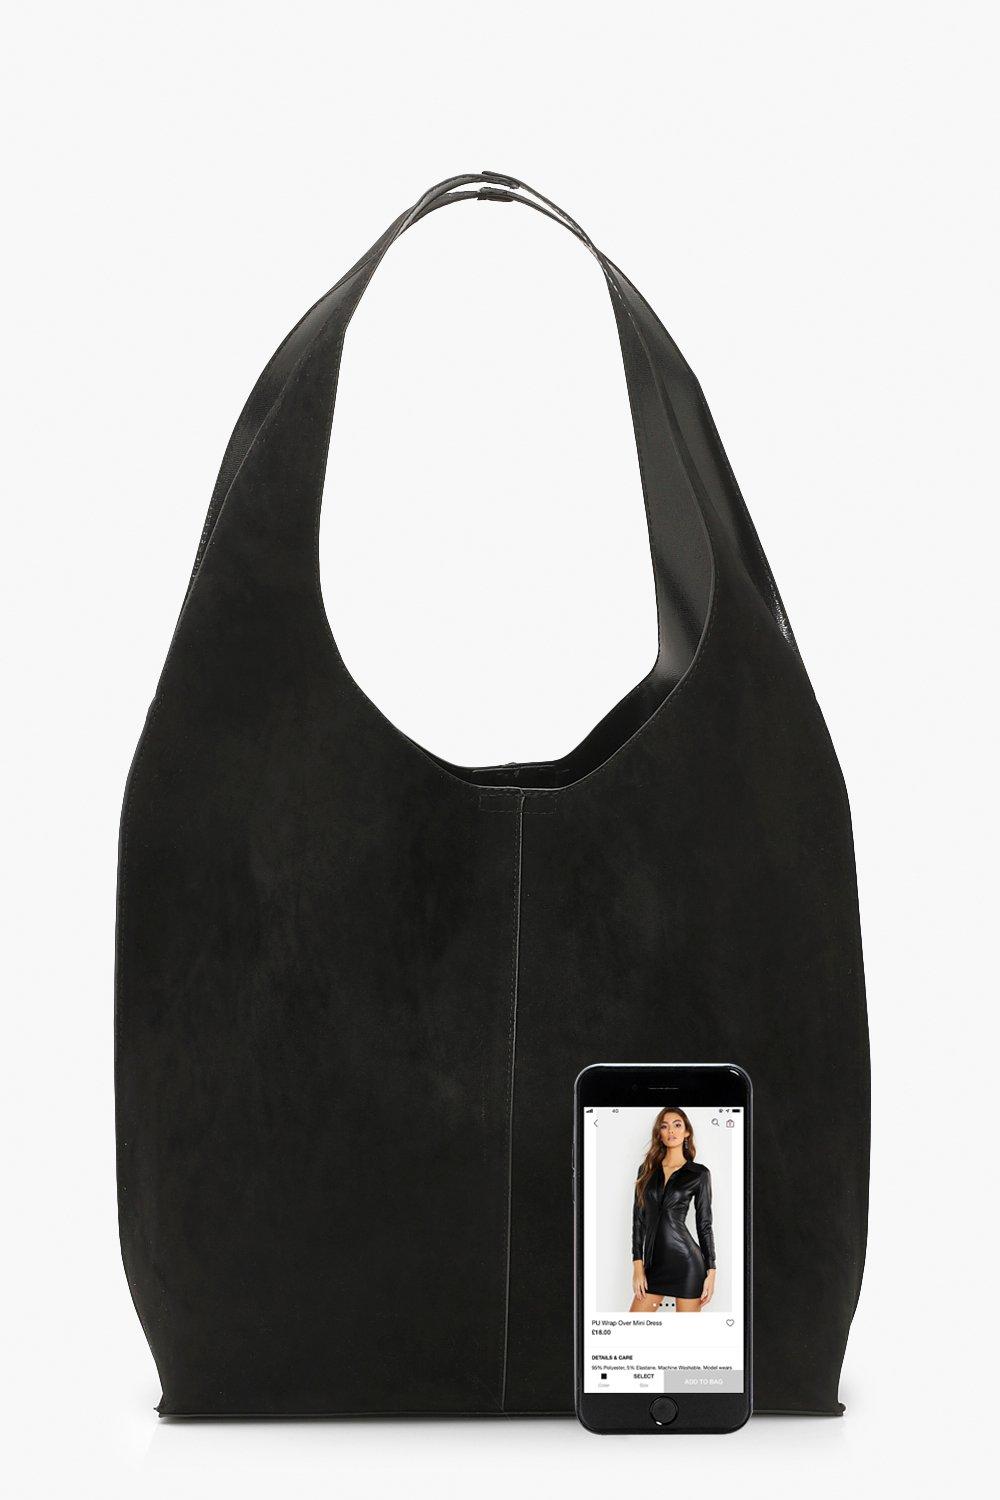 Boohoo Womens Scarf Detail Mini Tote Bag - Black - One Size